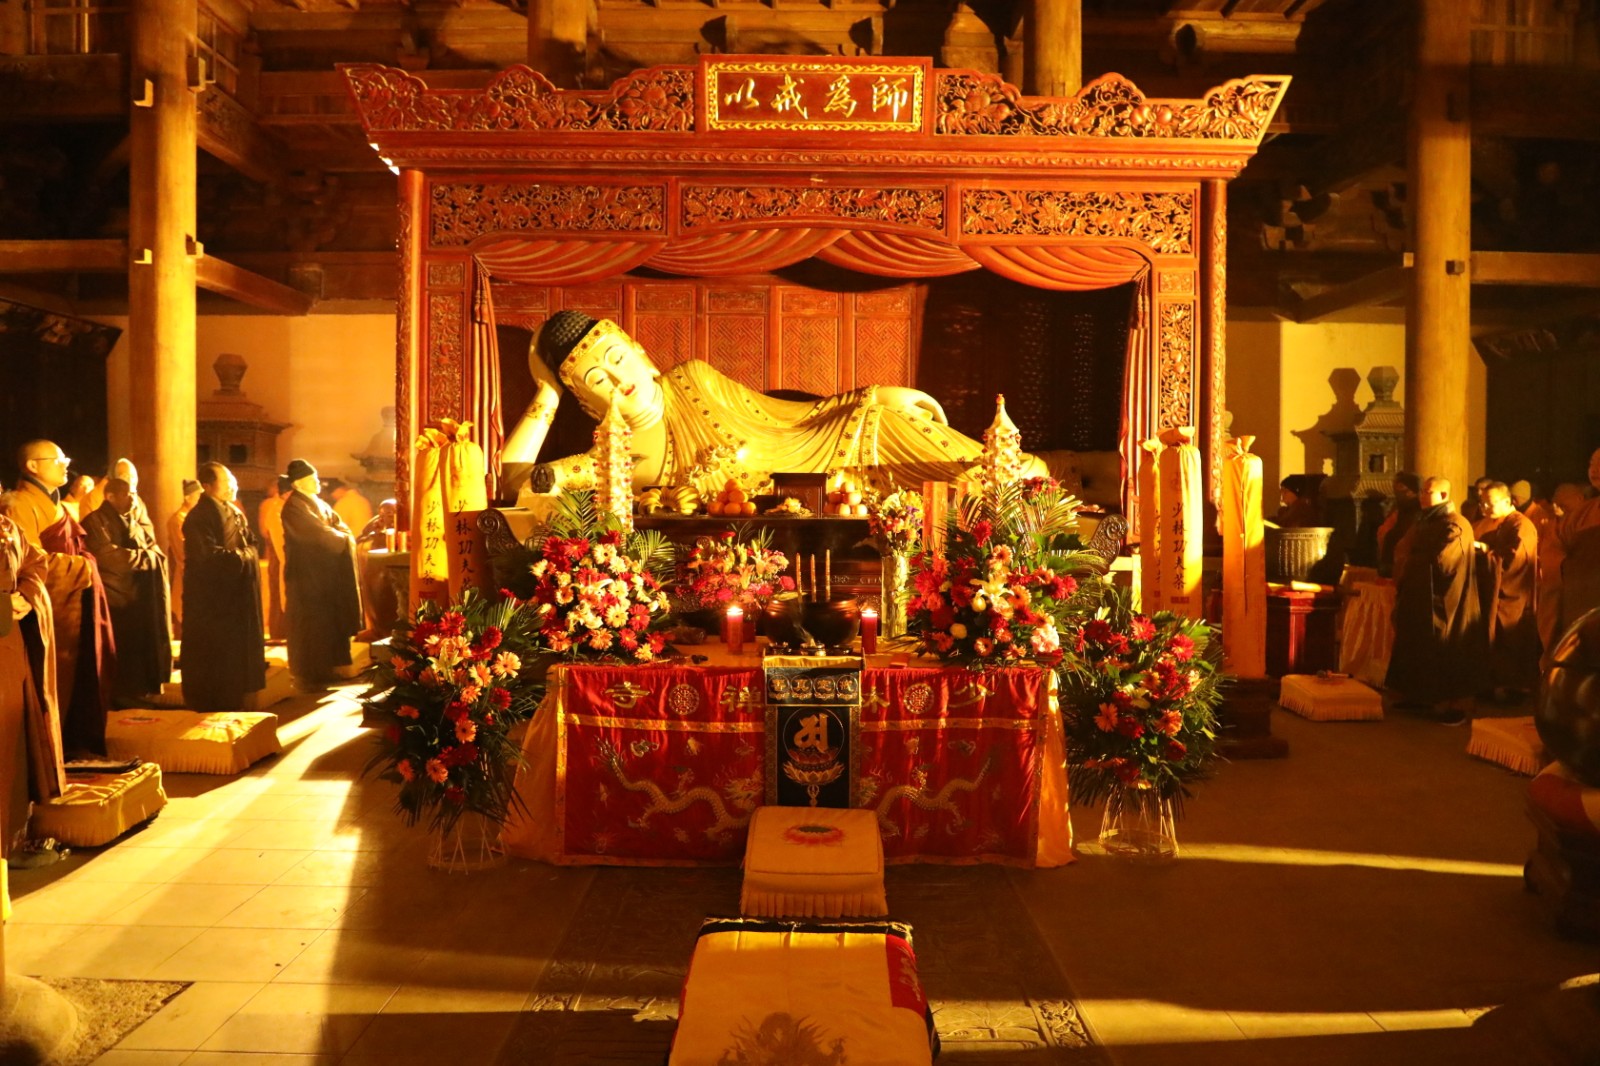 河南嵩山少林寺正月初一举办纪念弥勒佛诞辰上供祈福法会